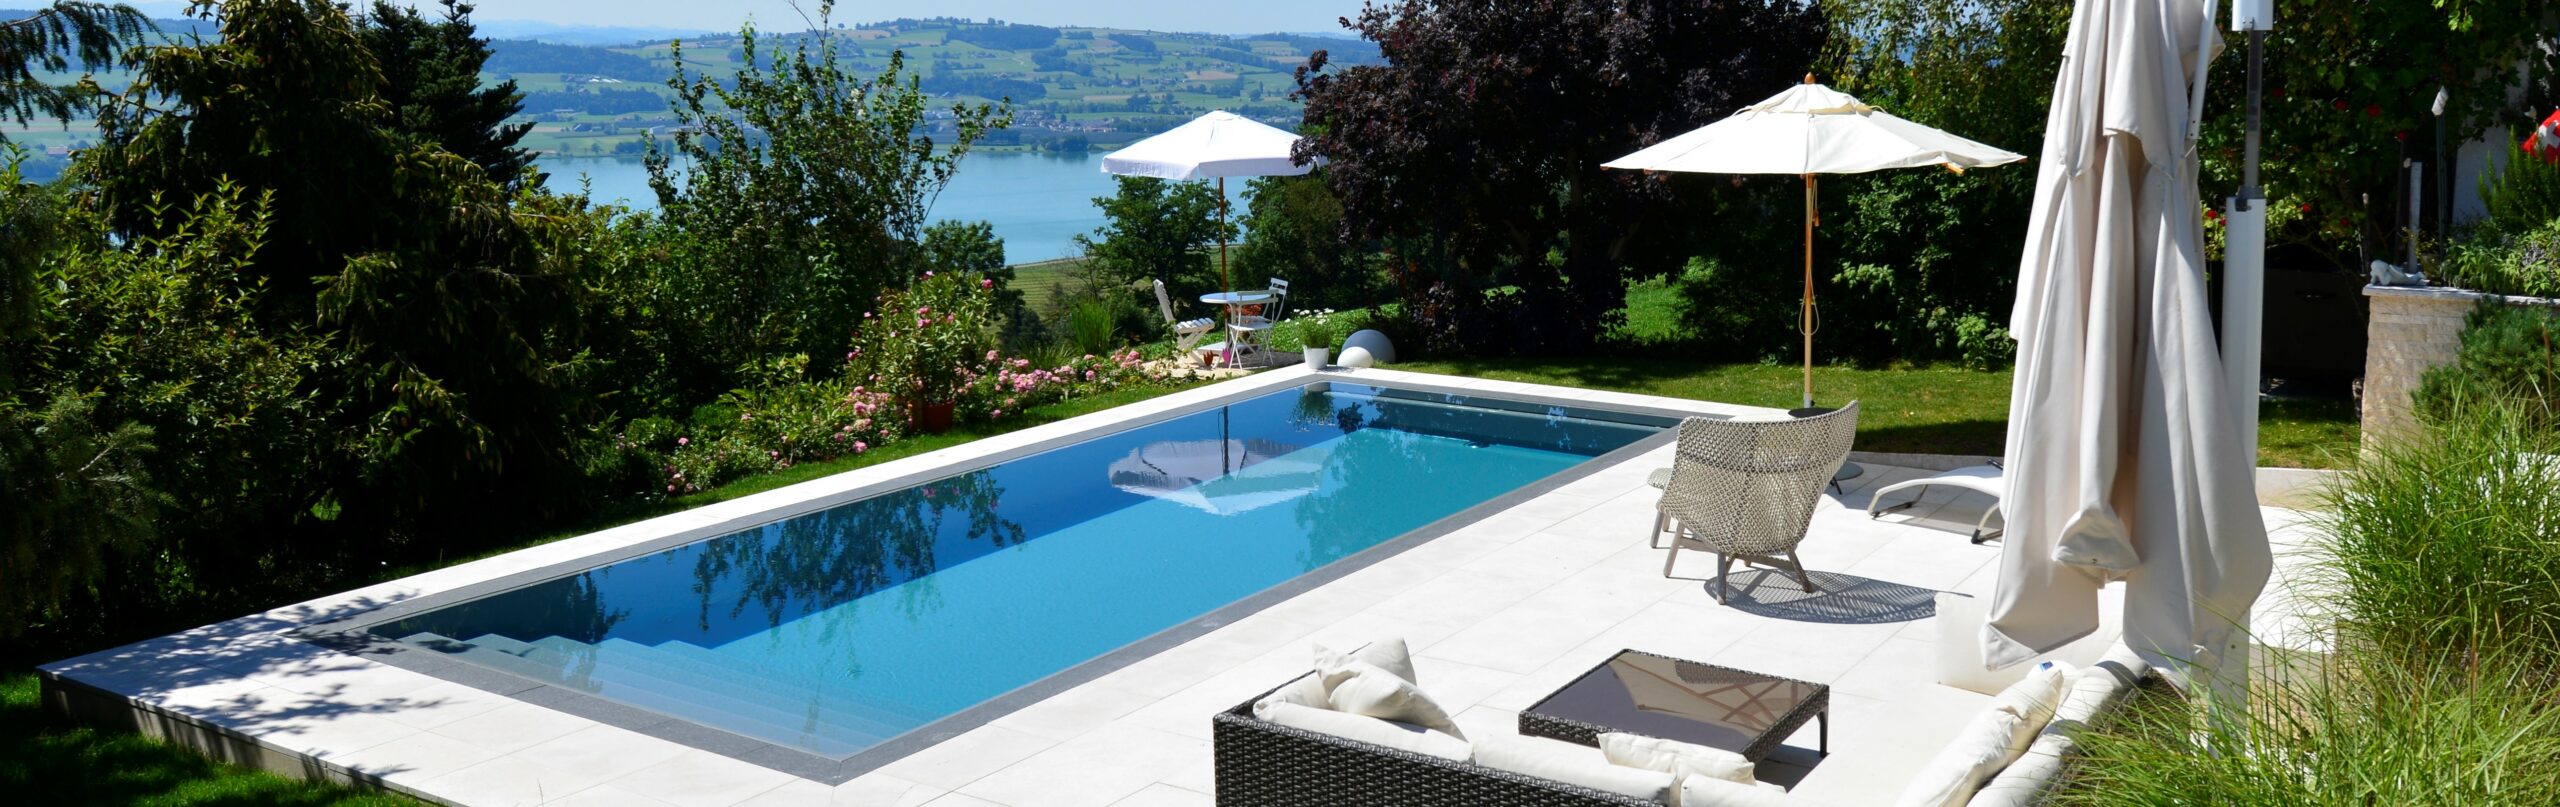 Schwimmbad kaufen Schweiz 11 scaled